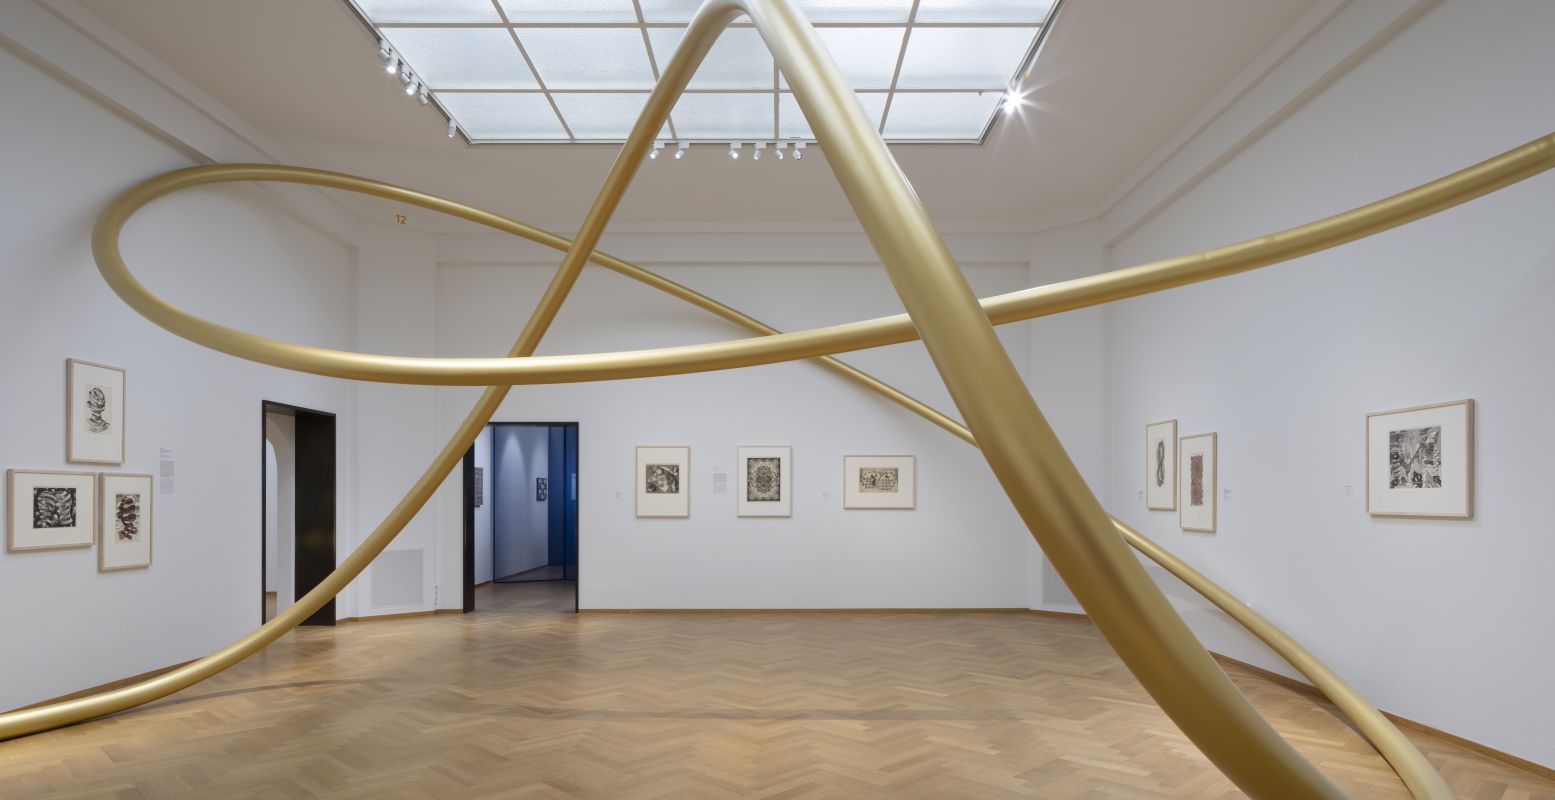 Beeld zaal â€˜Oneindigheid' met installatie 'Endless Line' van Gijs Van Vaerenbergh  en prenten van M.C. Escher. Fotograaf: Johnny Umans